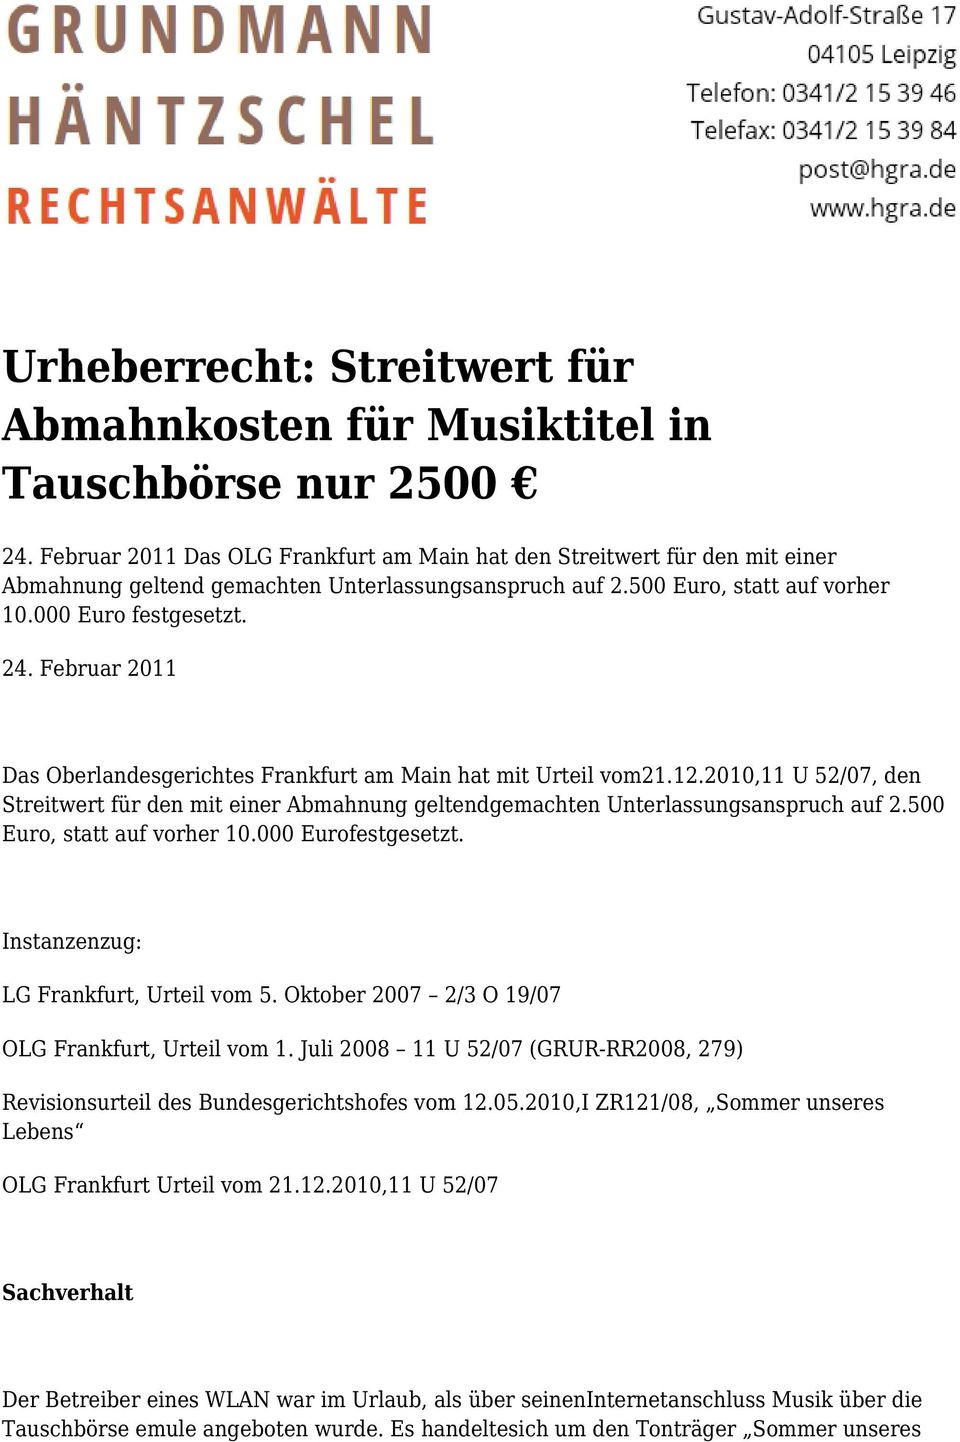 Februar 2011 Das Oberlandesgerichtes Frankfurt am Main hat mit Urteil vom21.12.2010,11 U 52/07, den Streitwert für den mit einer Abmahnung geltendgemachten Unterlassungsanspruch auf 2.